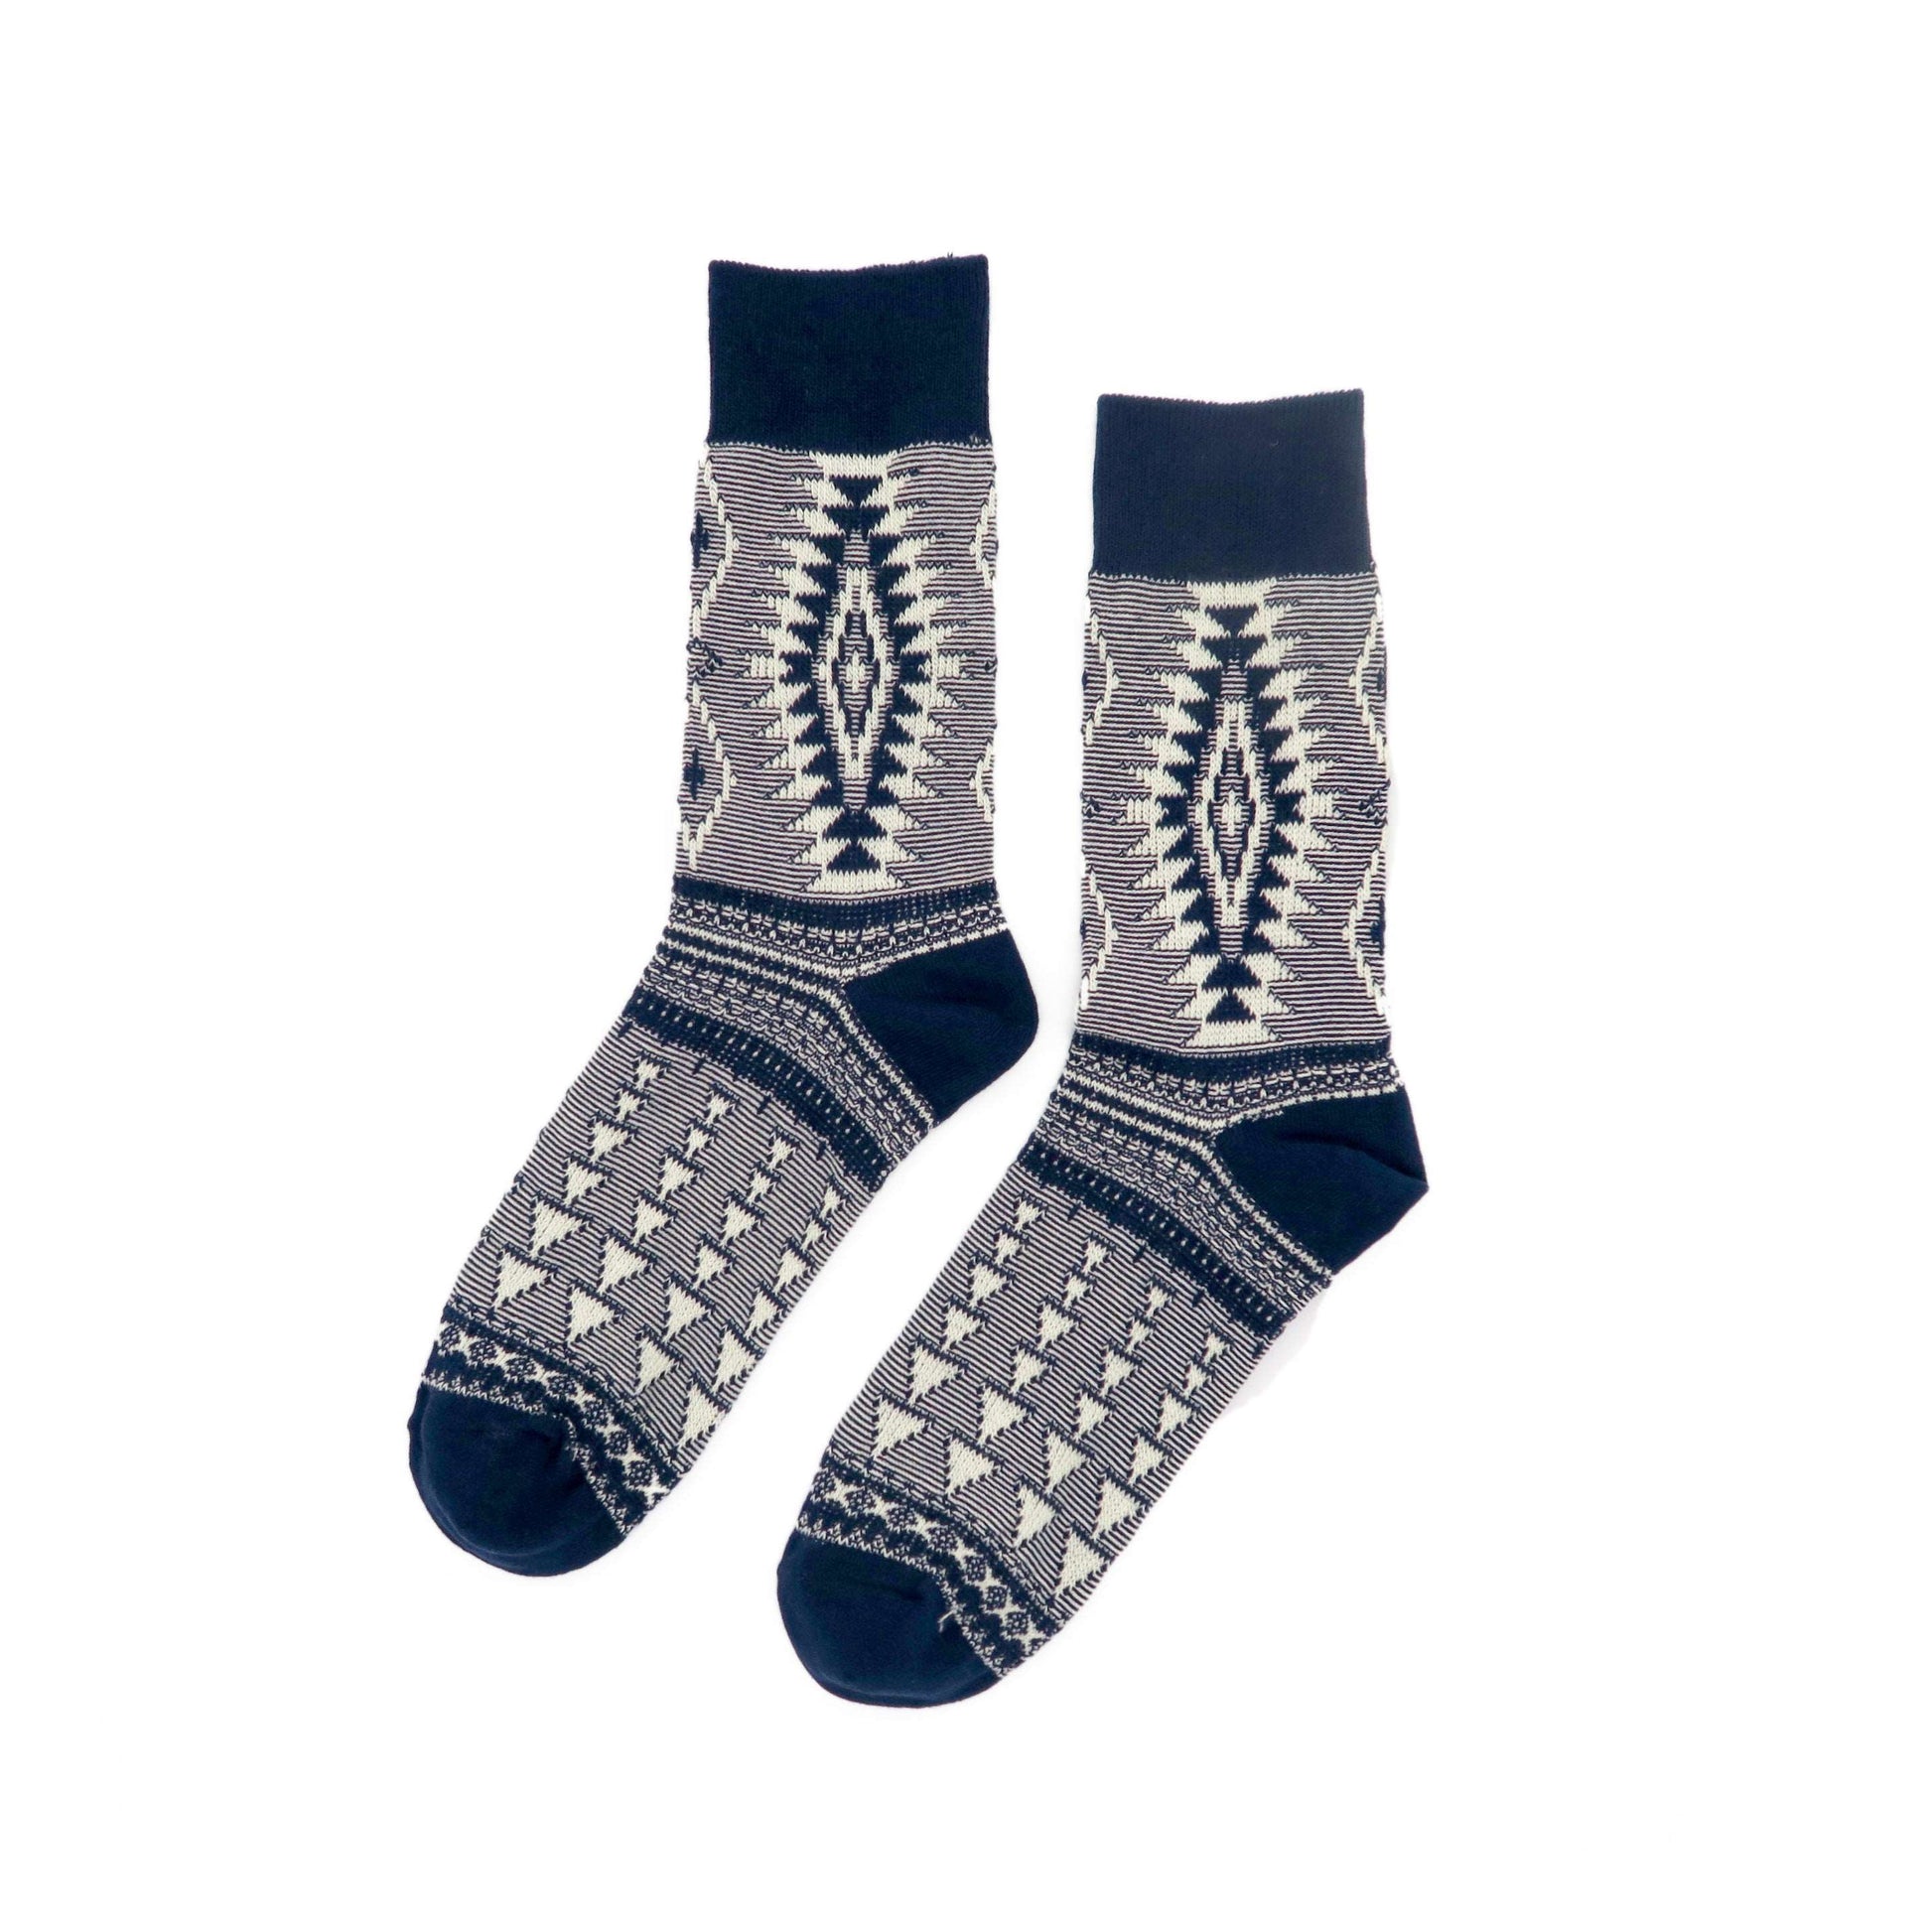 Africa Tribal Socks - Navy